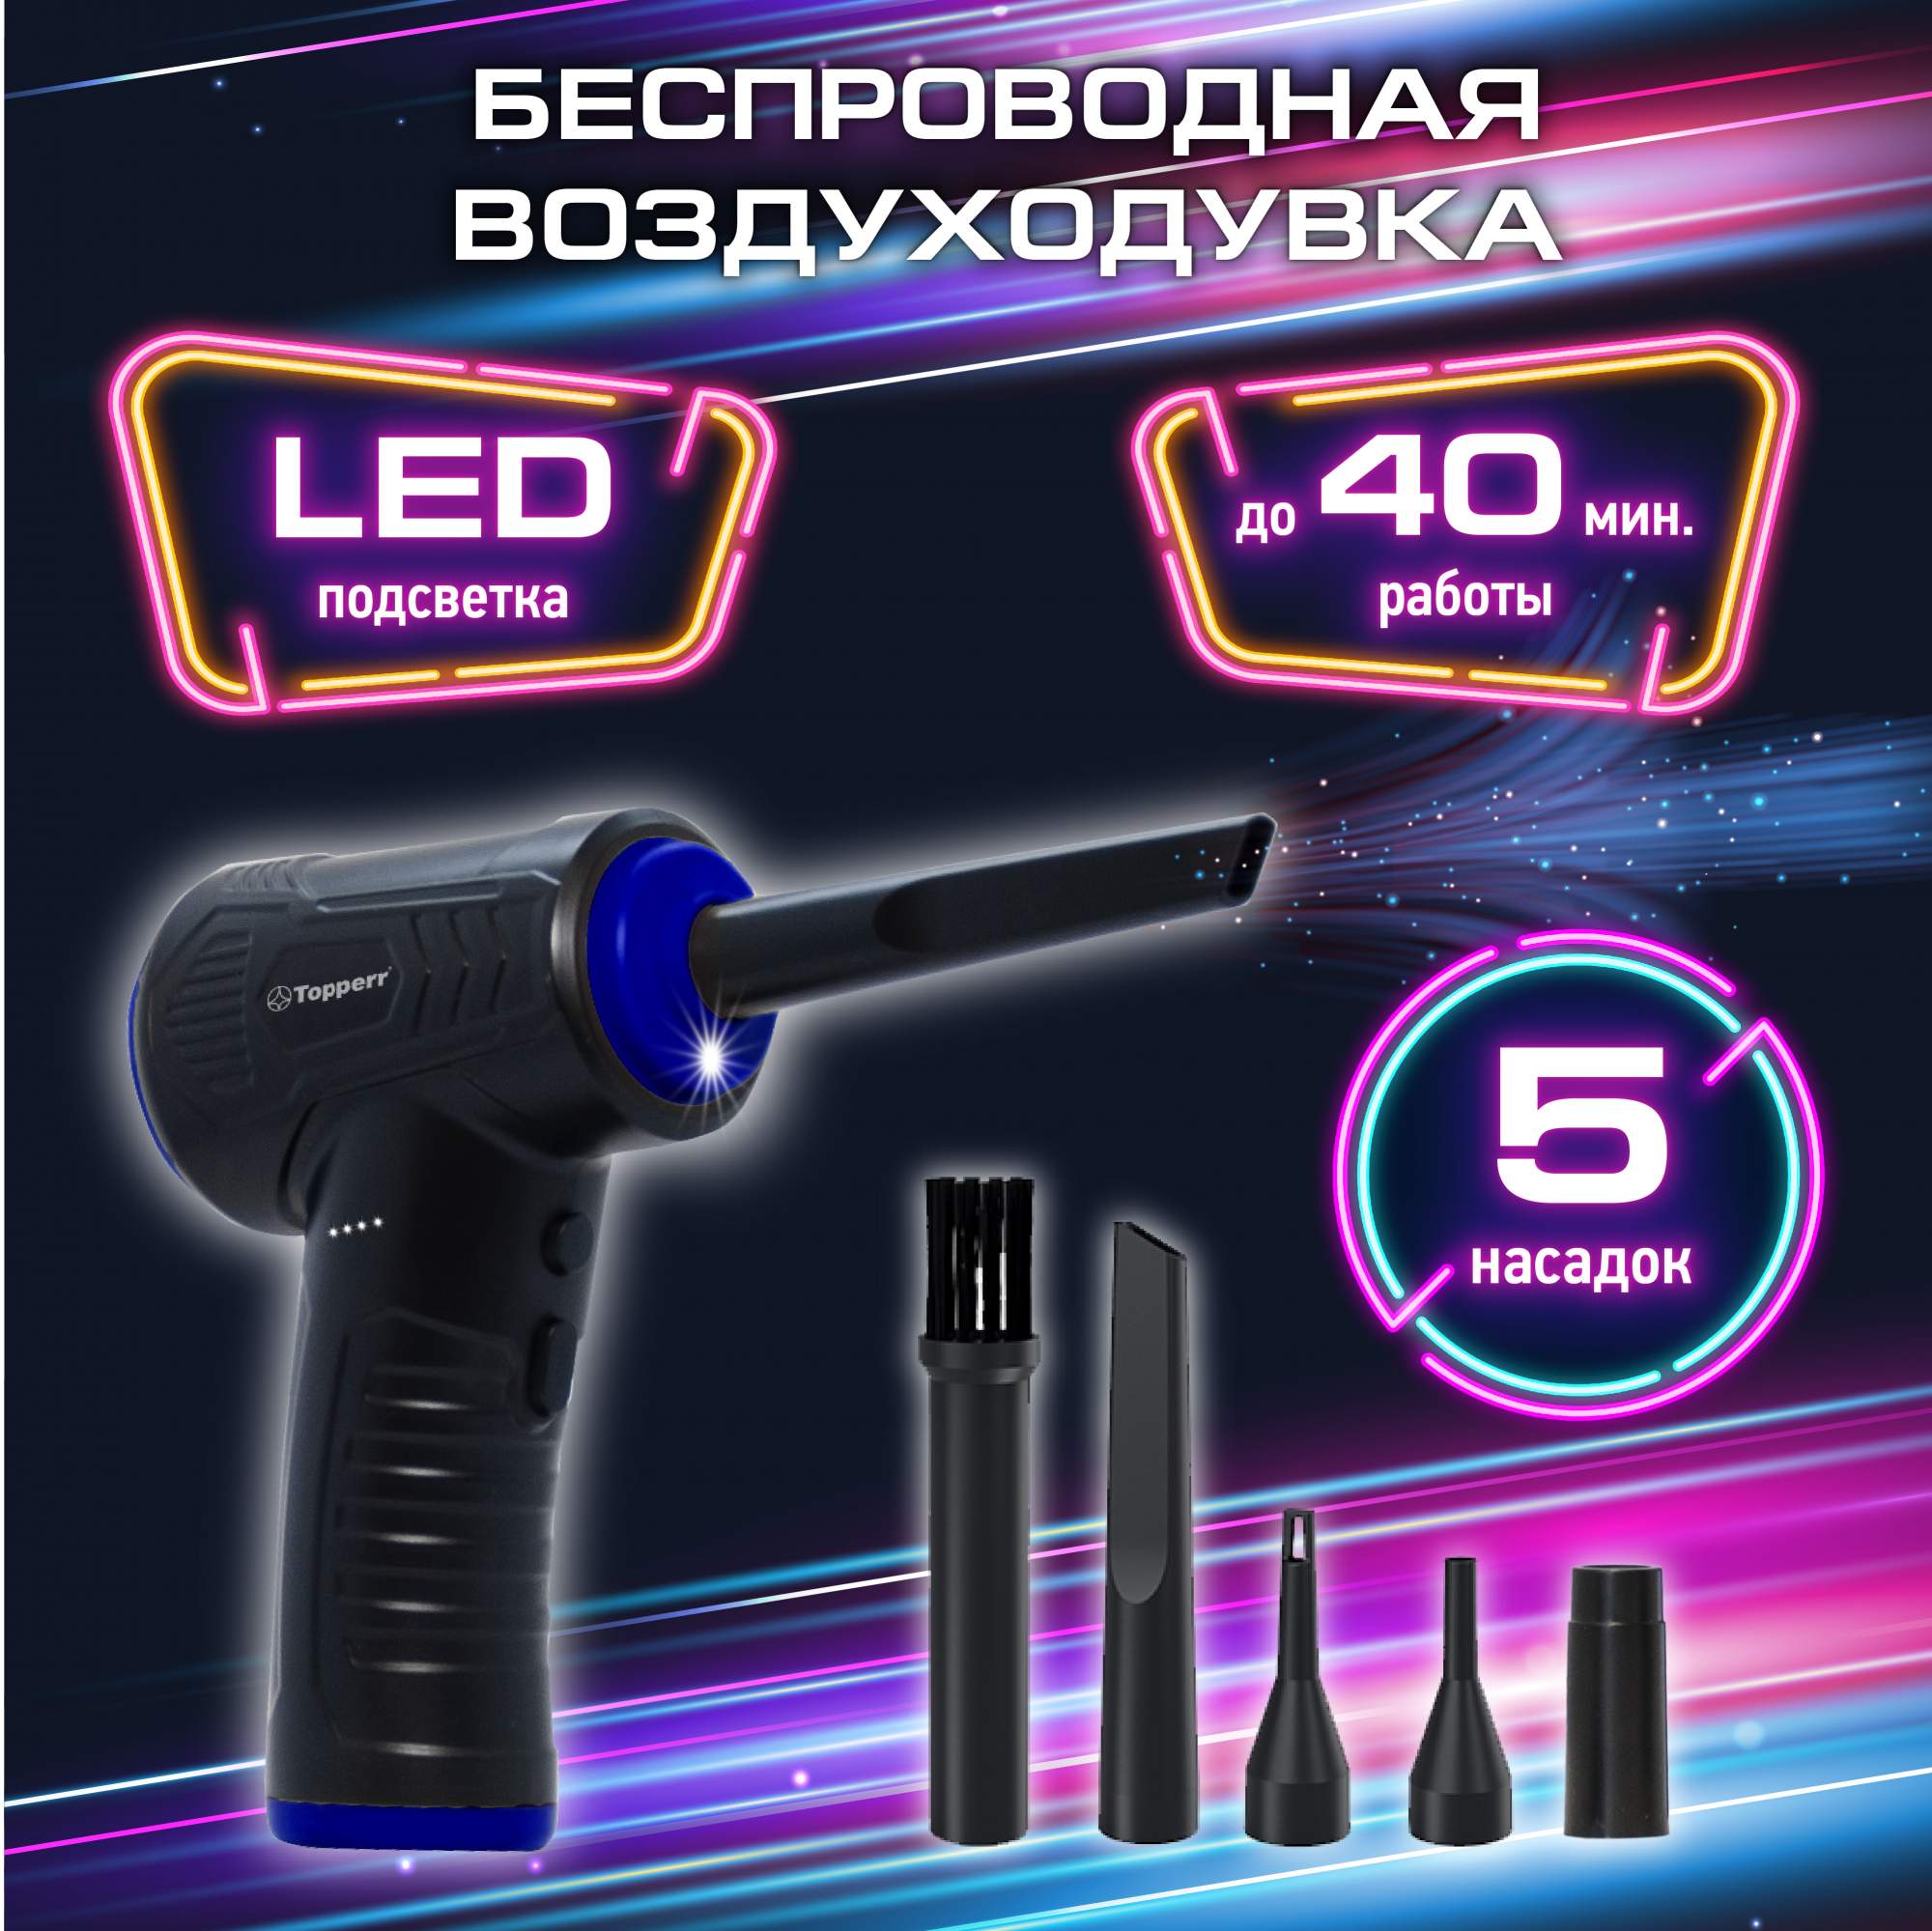 Воздуходувка для компьютера Topperr 3430, купить в Москве, цены в интернет-магазинах на Мегамаркет